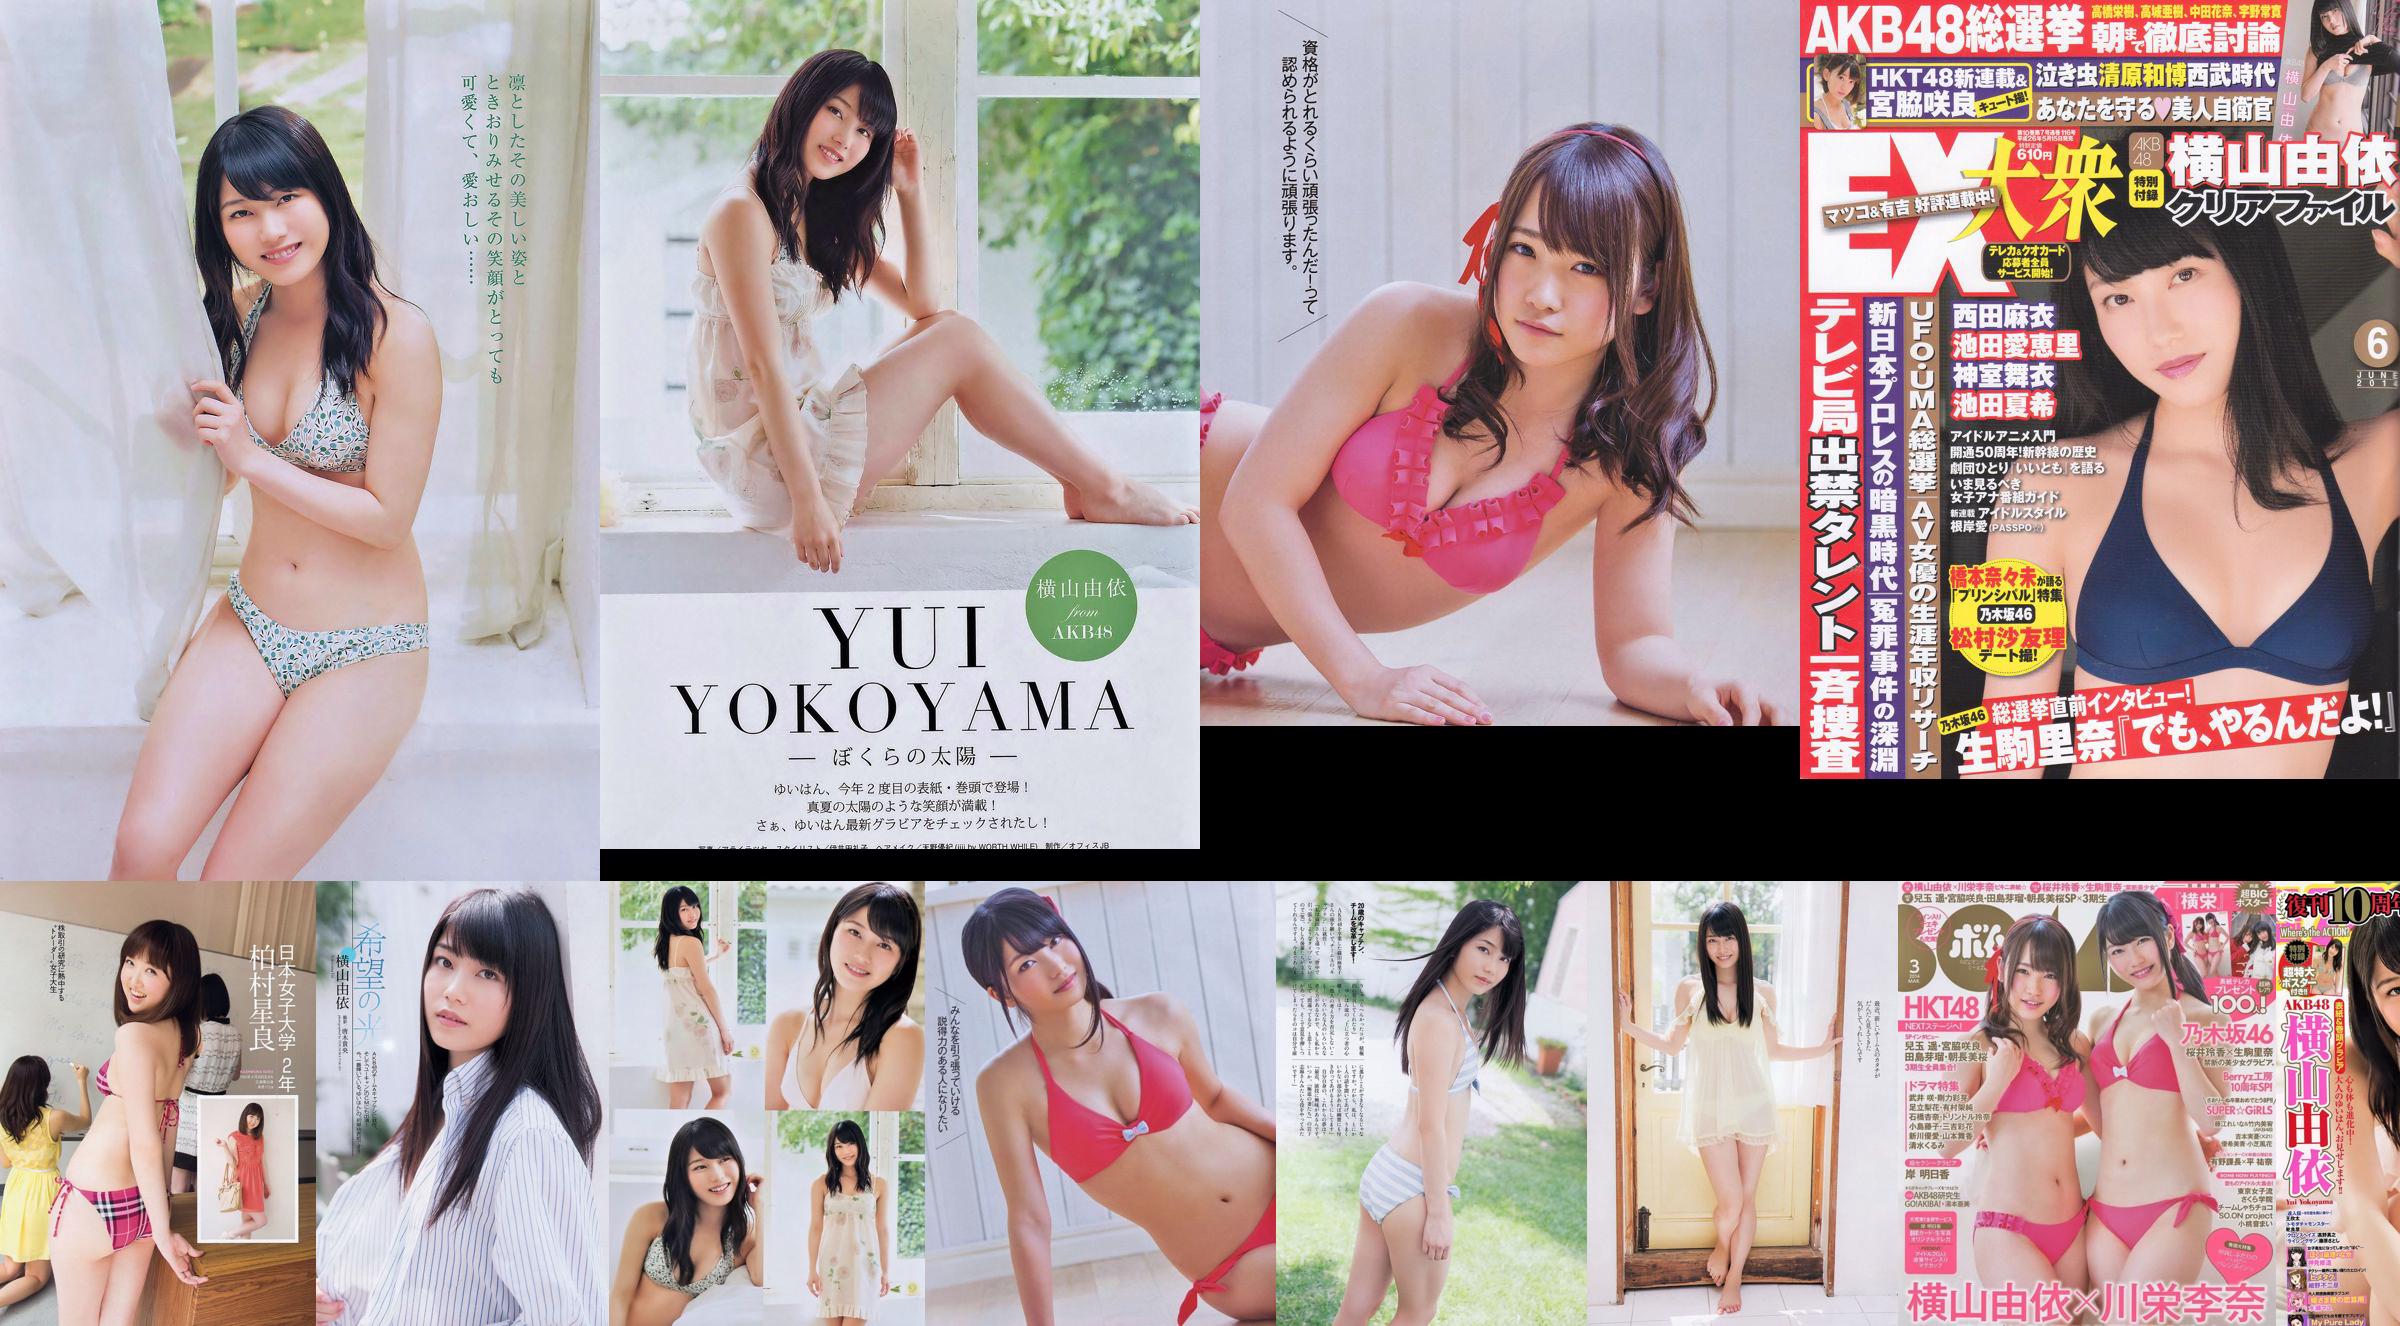 [EX Taishu] Yokoyama Yui, Miyawaki Sakura, Matsumura Sa Yuri 2014 Nr. 06 Fotomagazin No.ec6f4a Seite 1